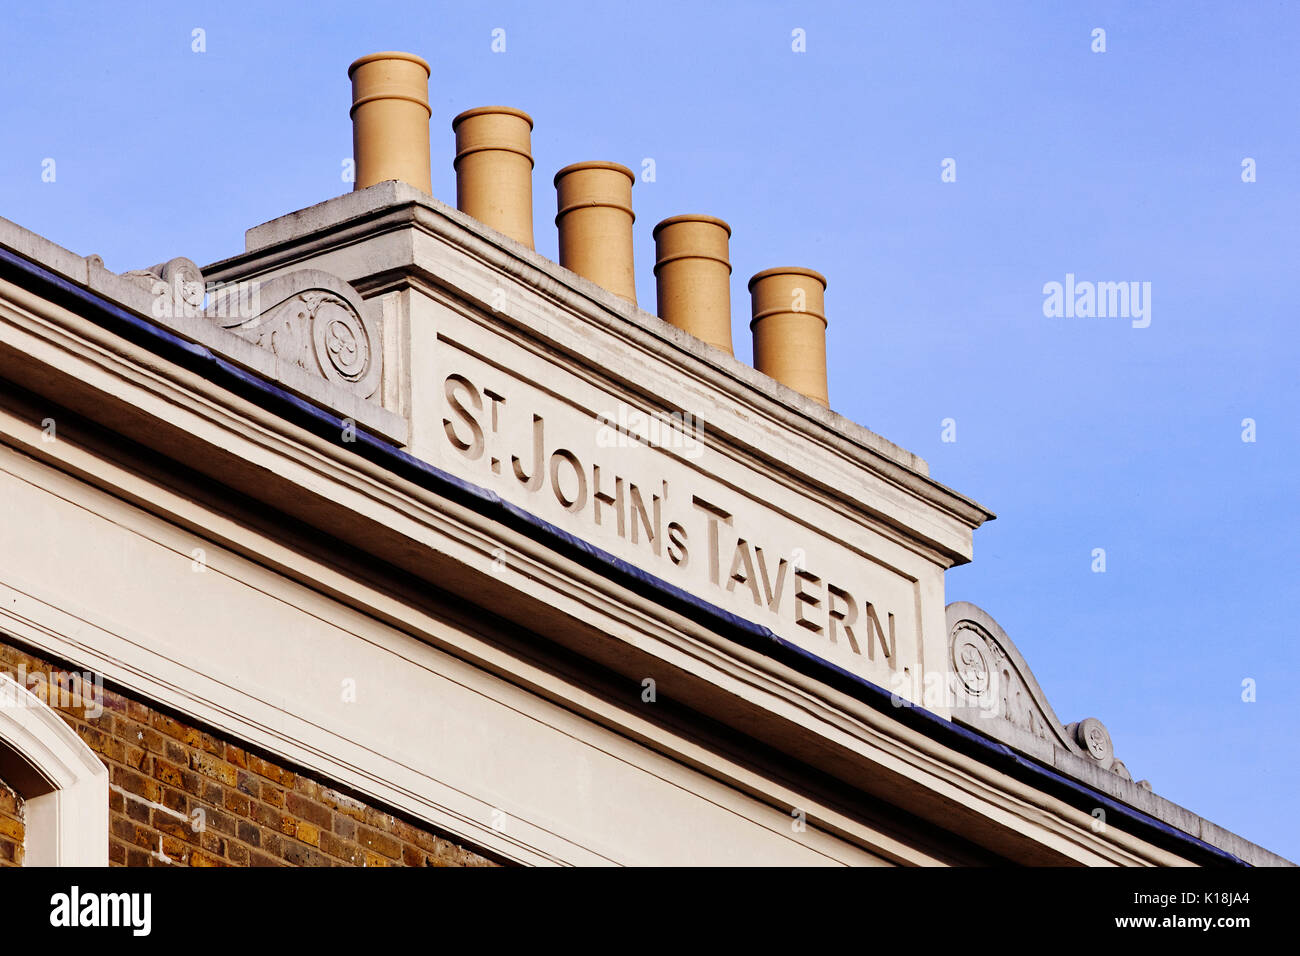 St John's Tavern London Stock Photo